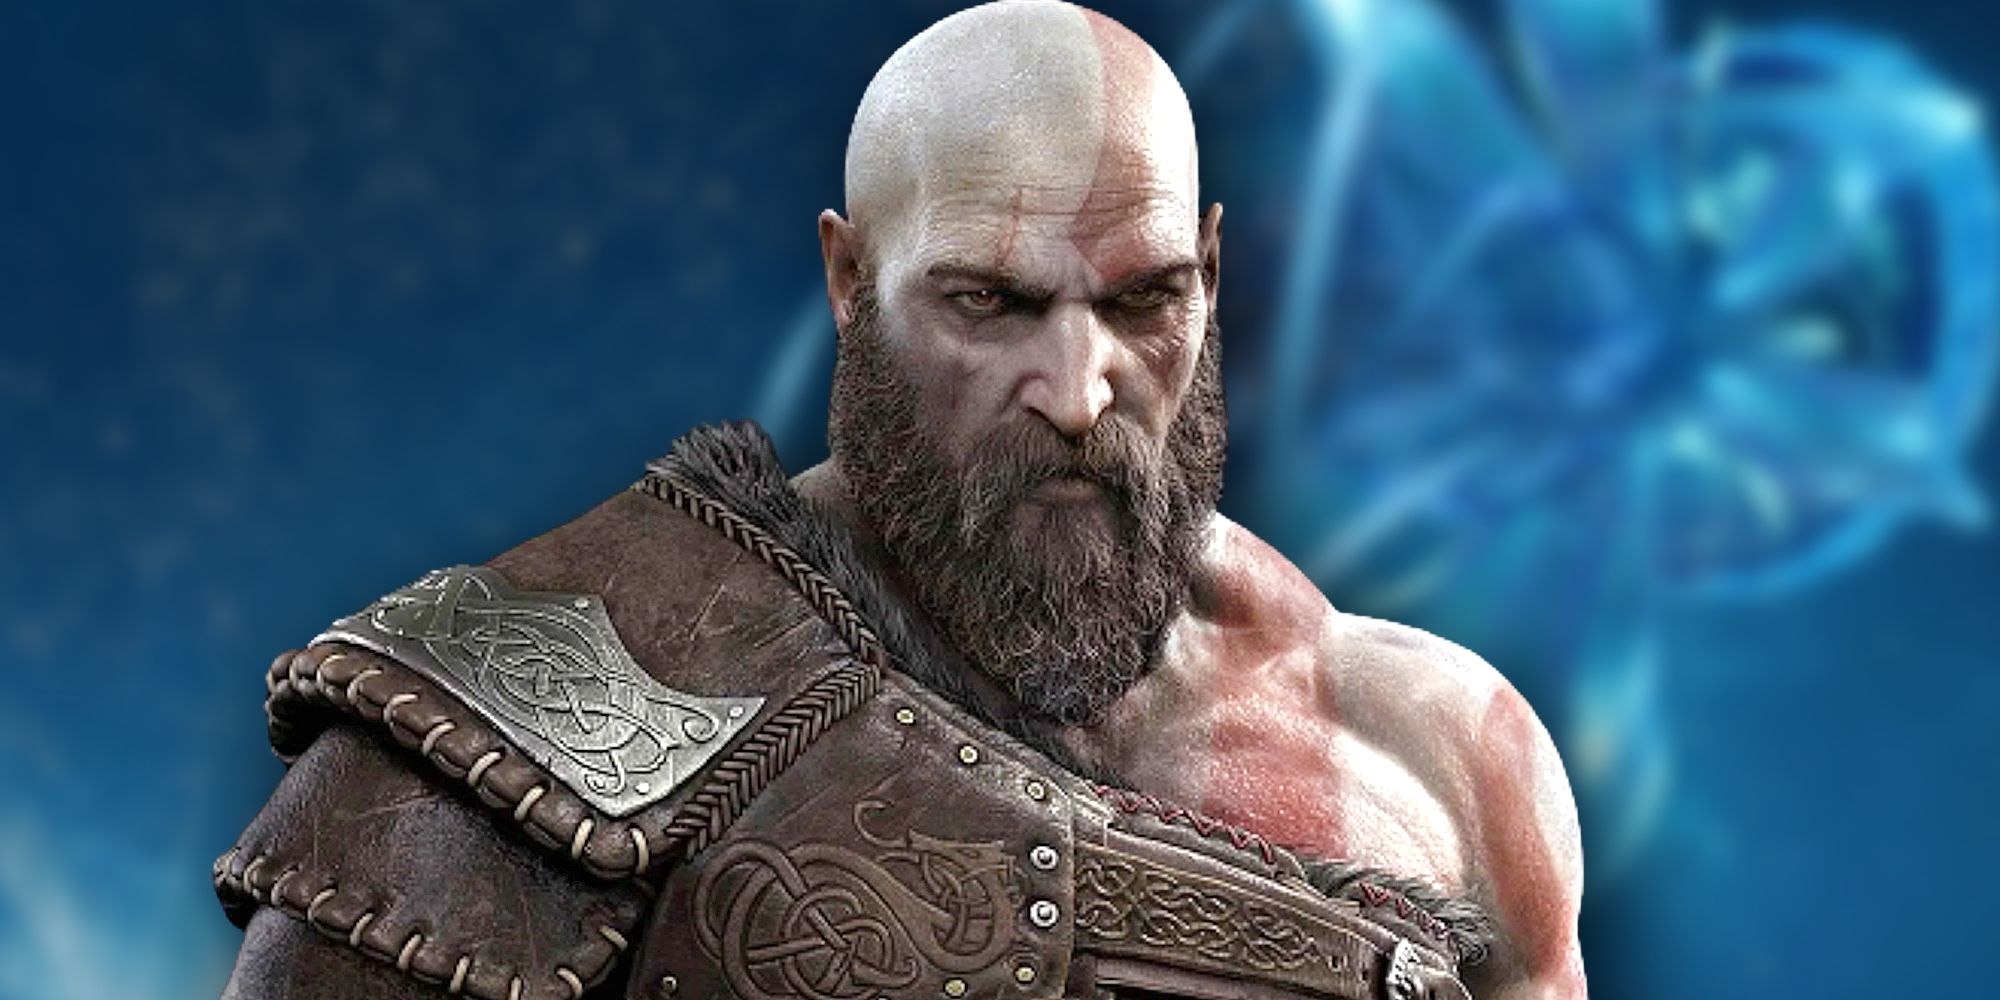 Does Kratos Die in 'God of War: Ragnarok'?